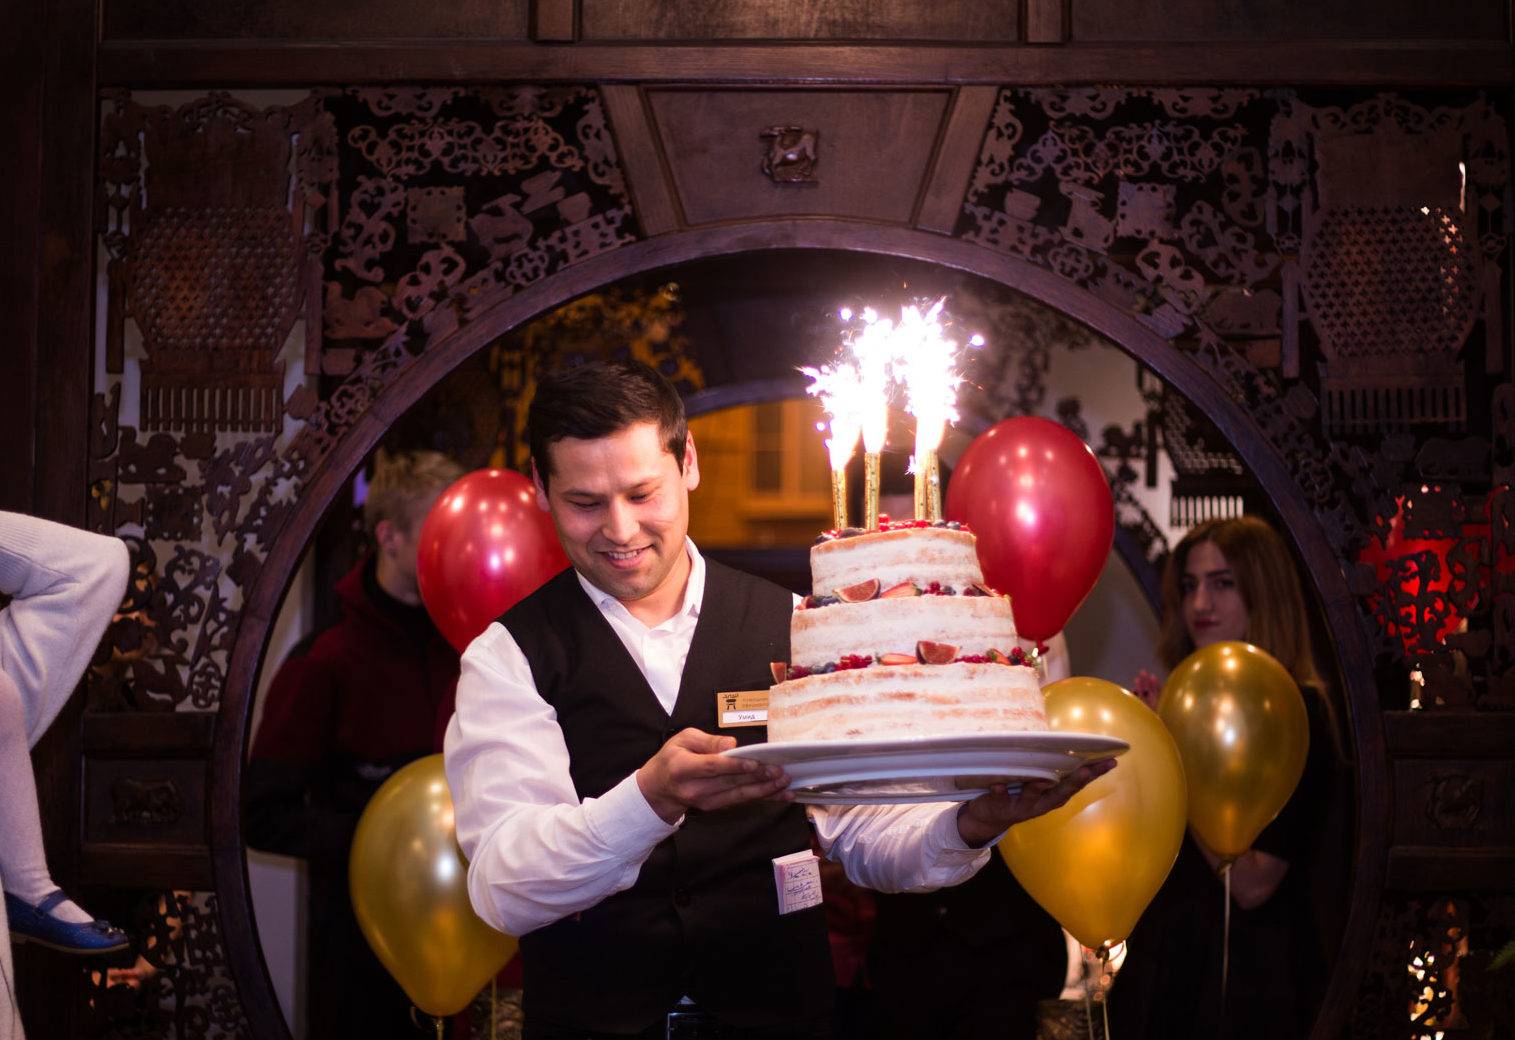 Организация дня рождения в ресторане: правила и идеи, которые помогут отметить праздник незабываемо